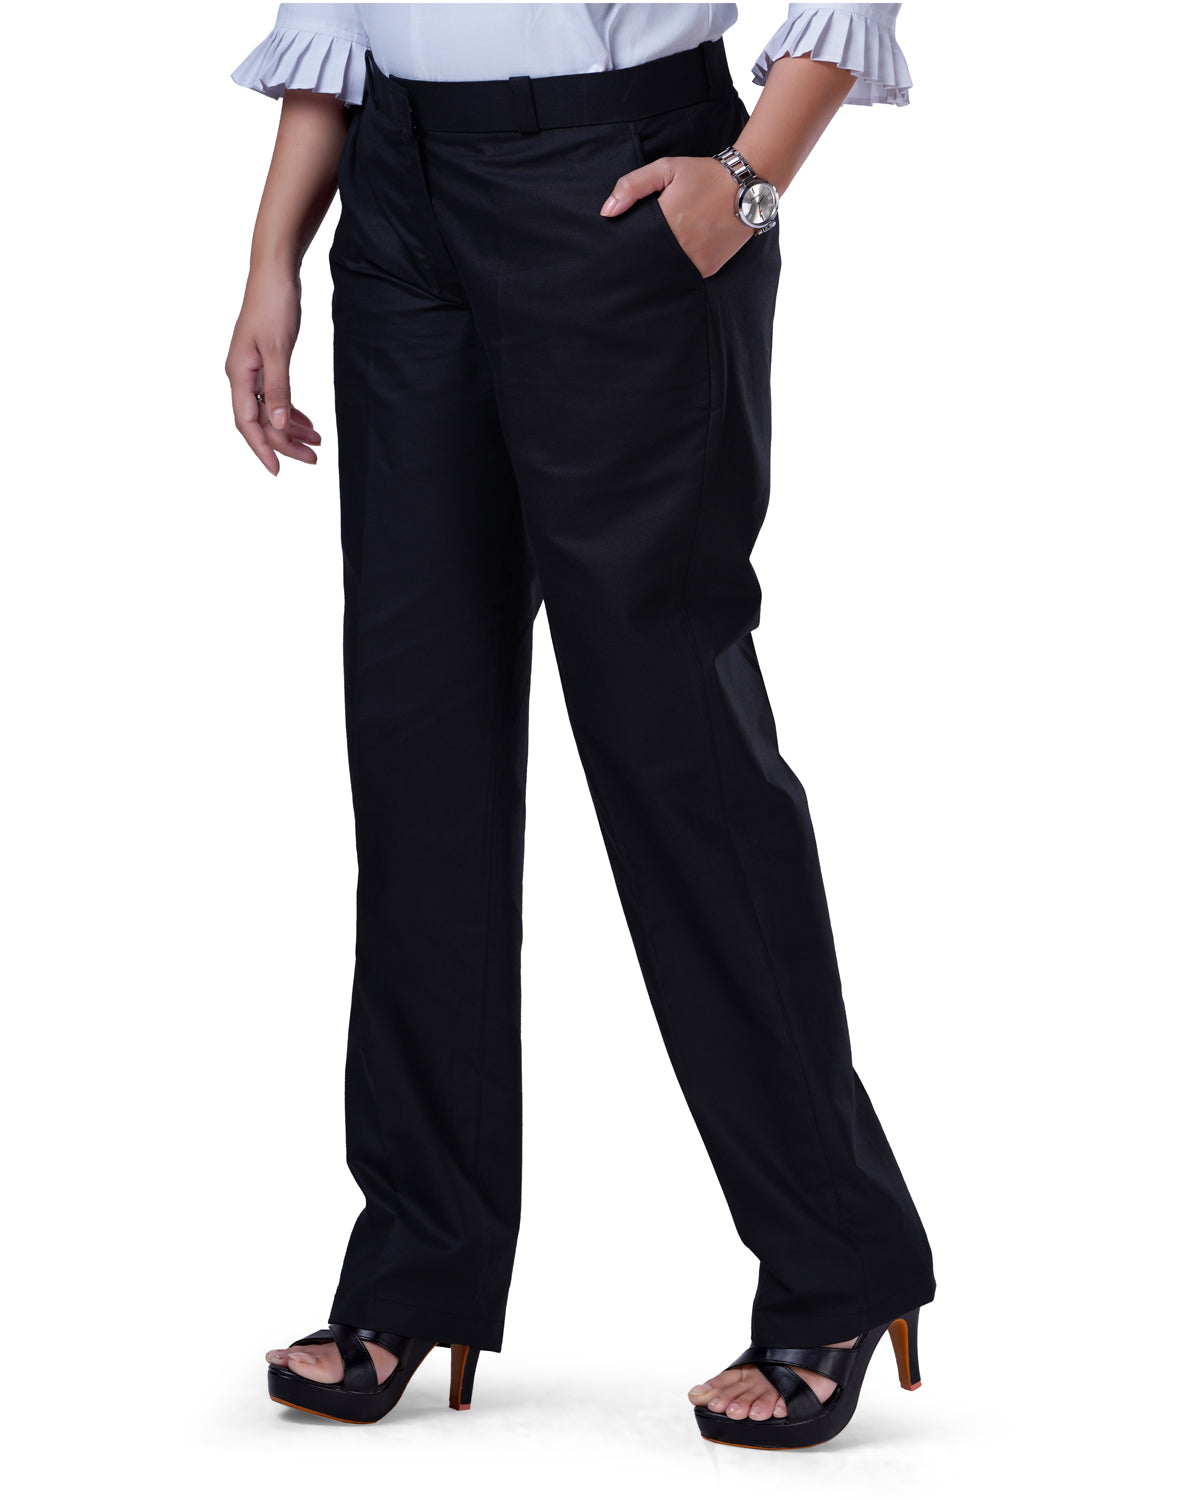 Buy Formal Black Corporate Trouser For Women Online @ Best Prices in India  | Uniform Bucket | UNIFORM BUCKET